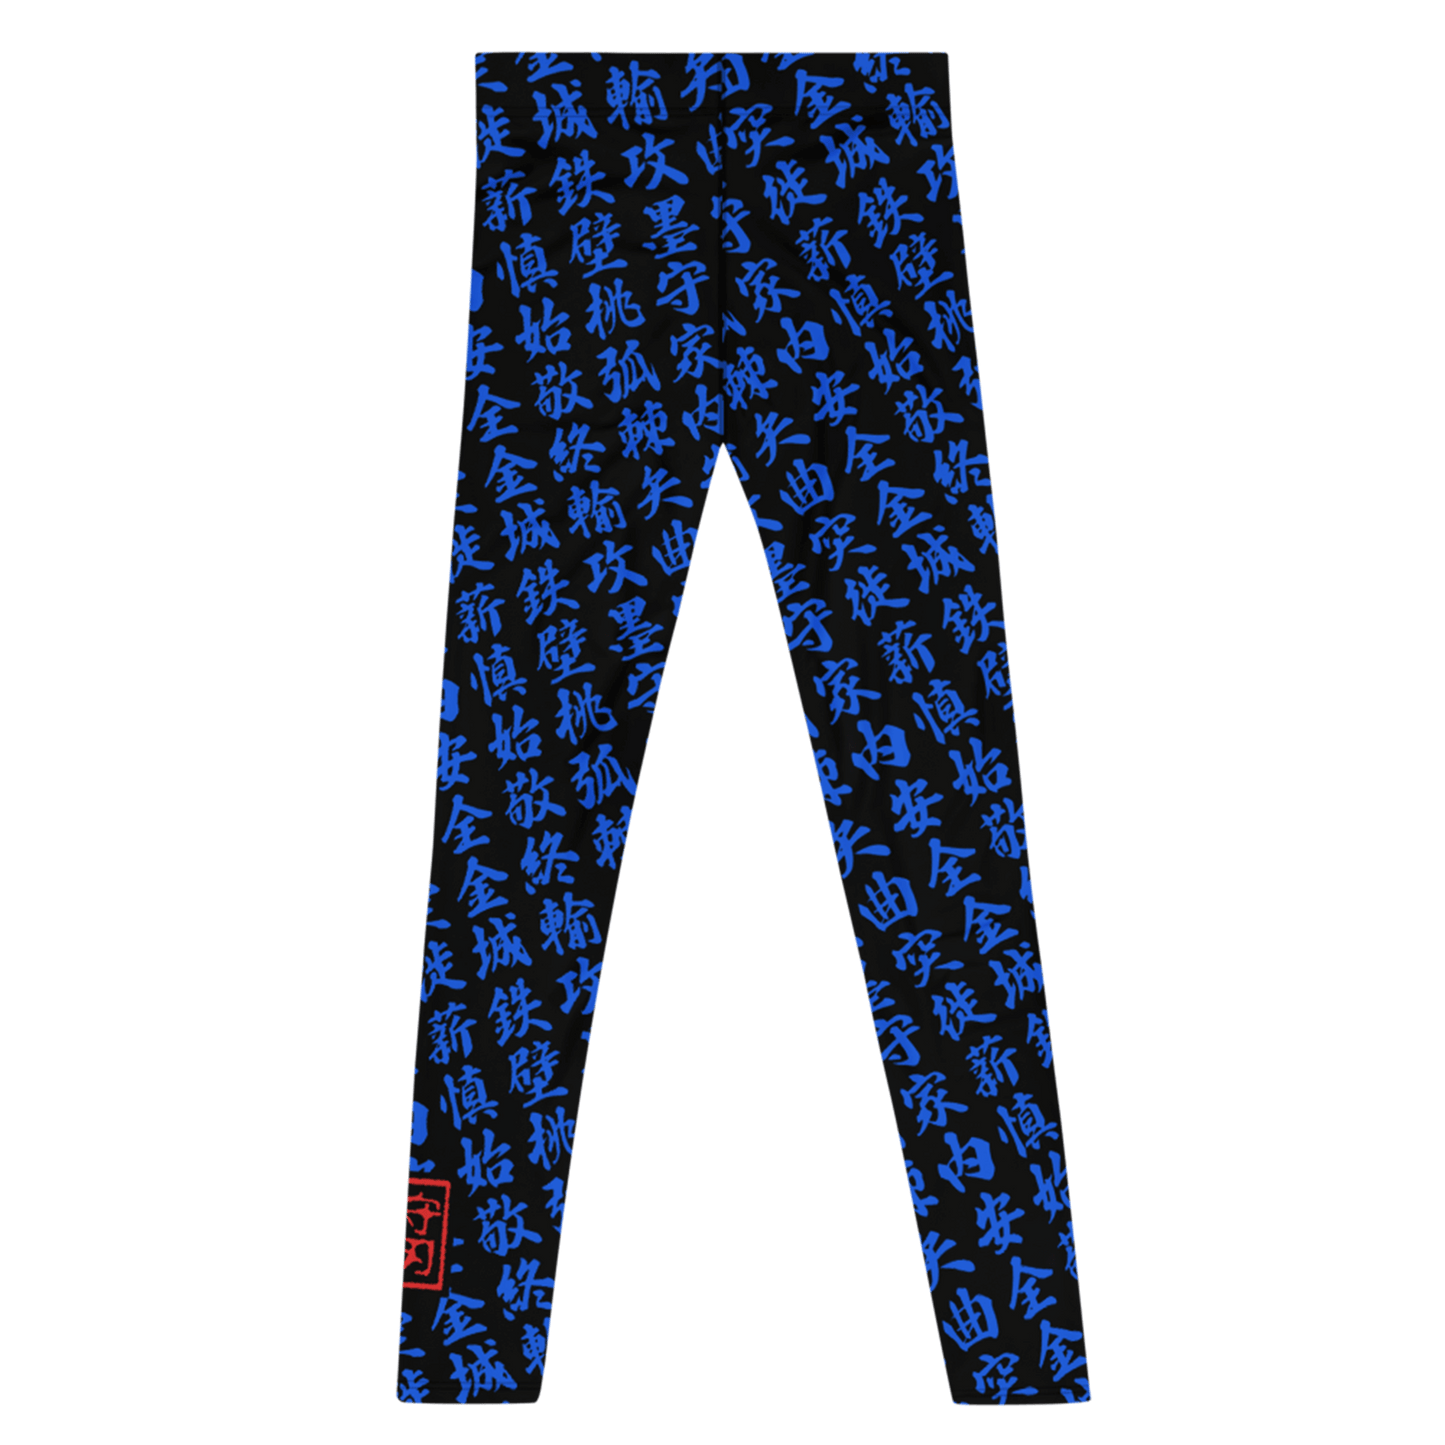 Men blue leggings with all-over print in Japanese KANJI